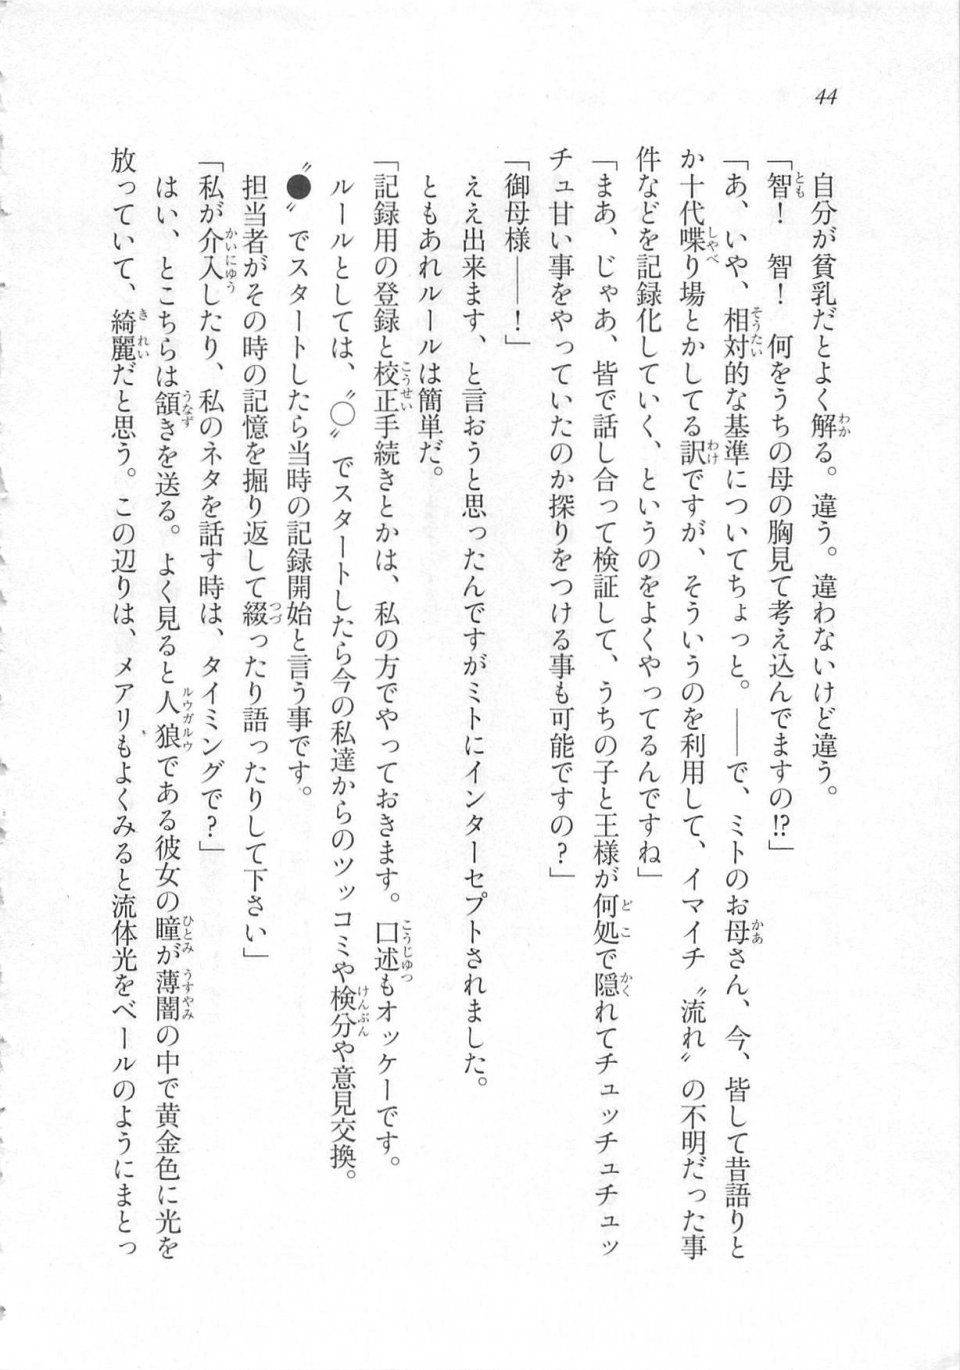 Kyoukai Senjou no Horizon LN Sidestory Vol 3 - Photo #48